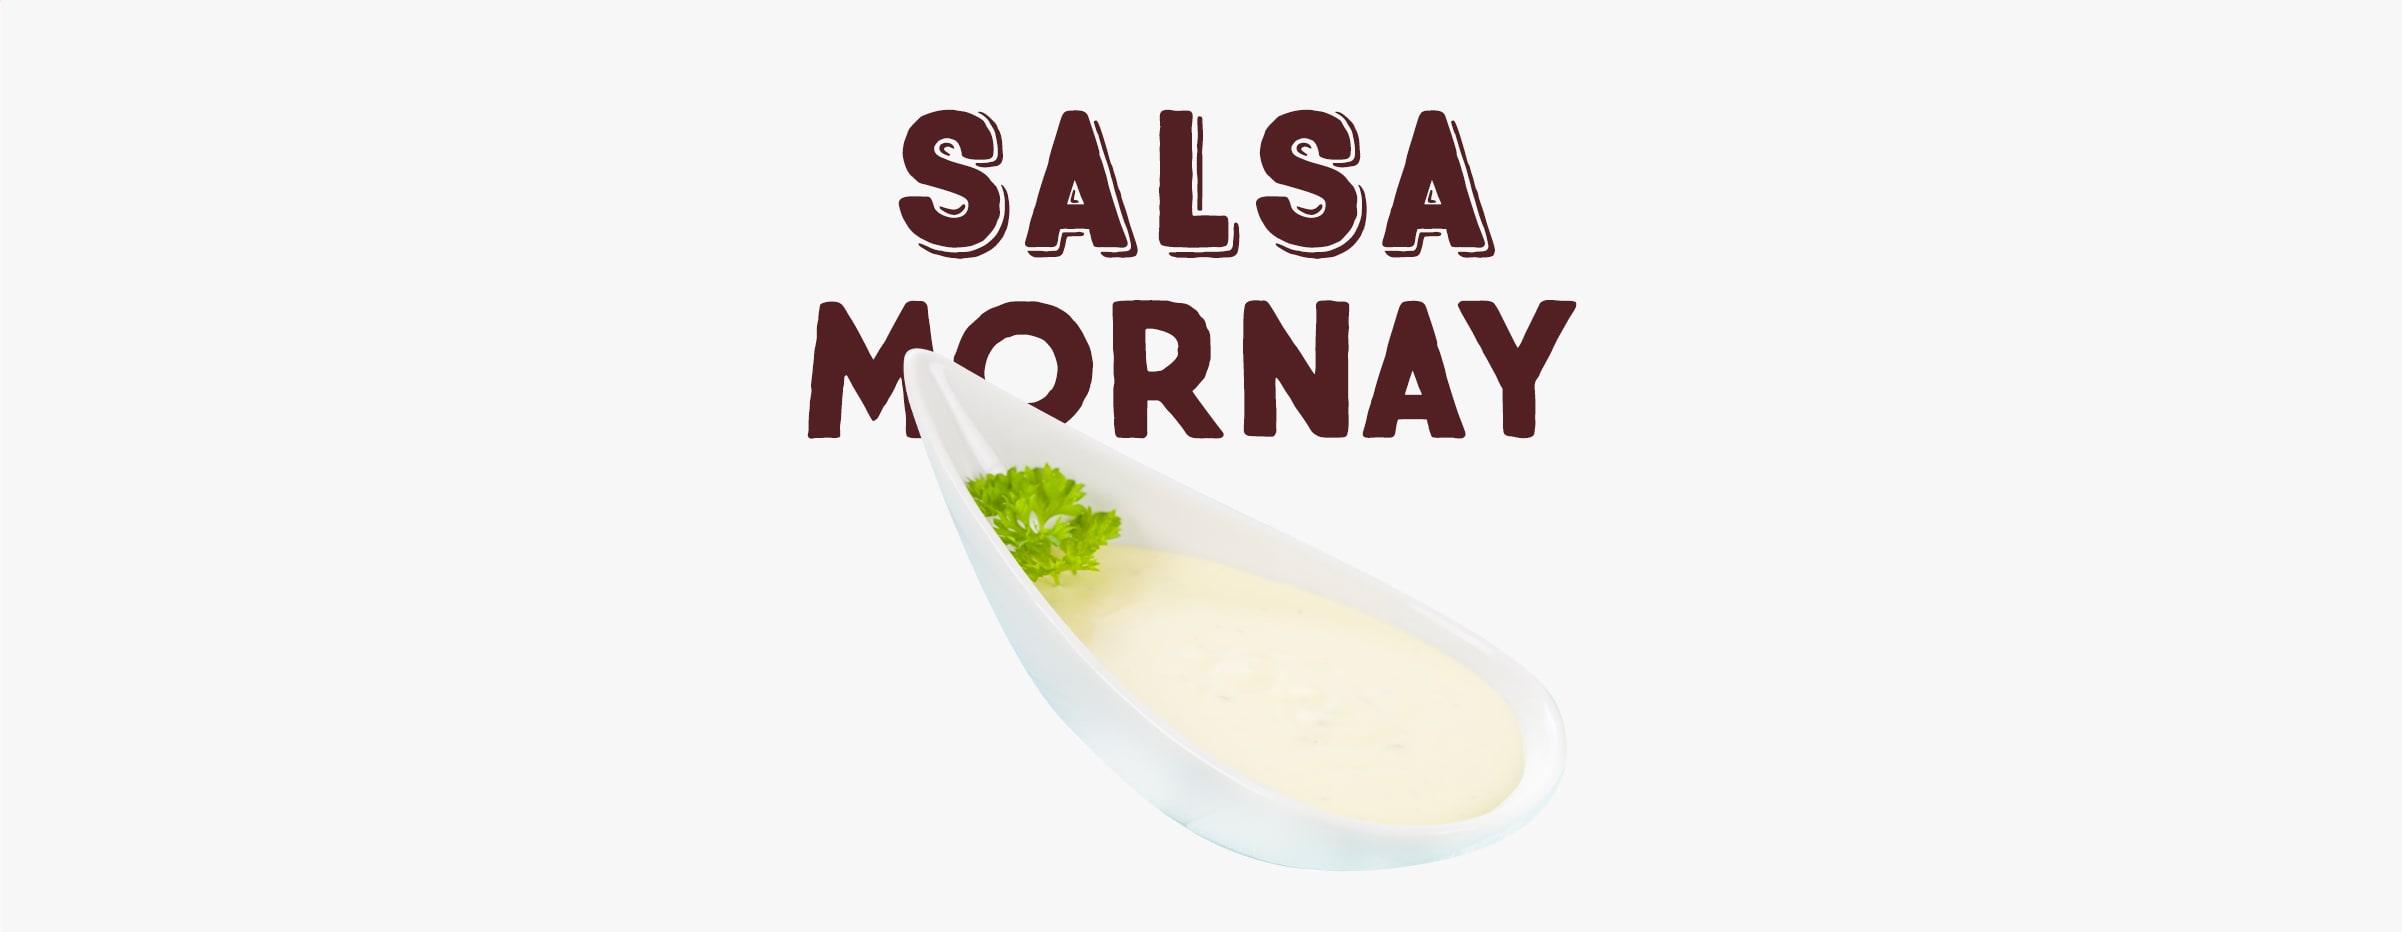 Salsa mornay